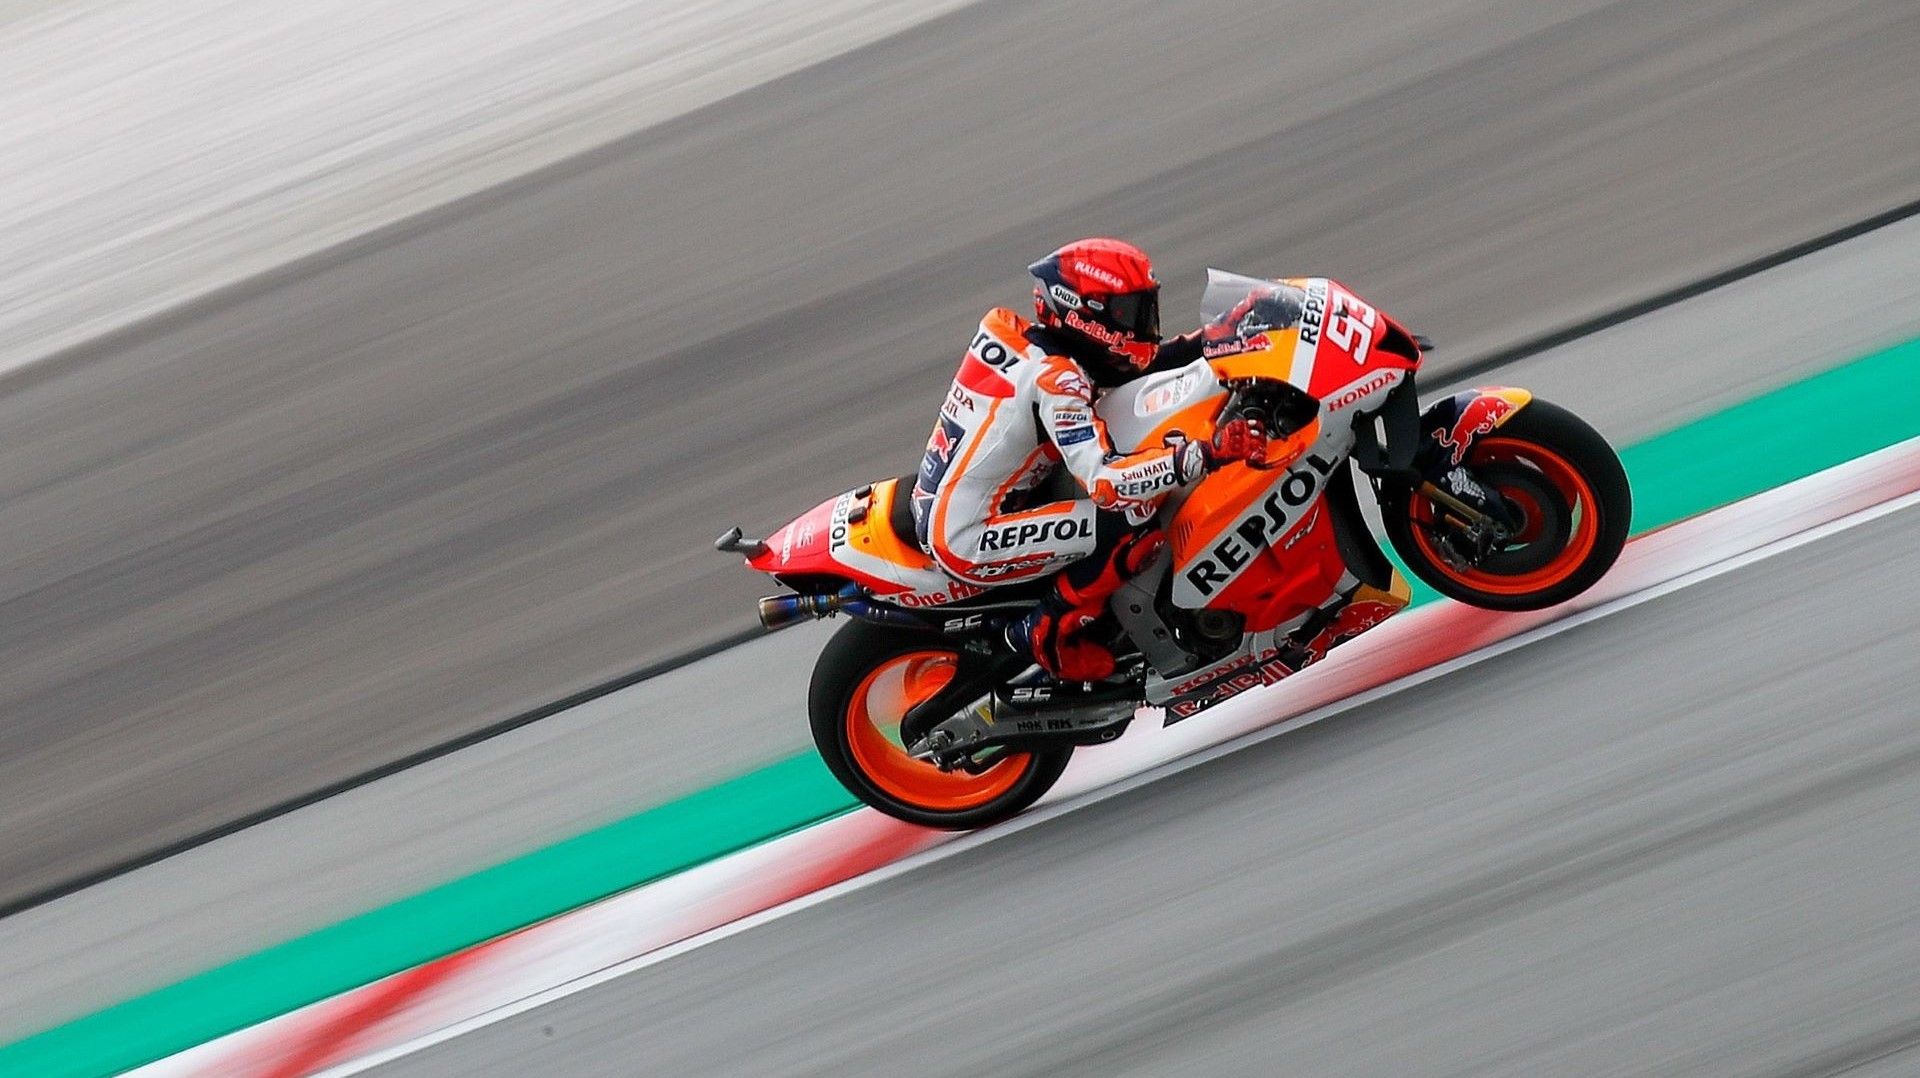 claridad Bailarín principio Castore desembarca en MotoGP con el patrocinio del equipo Repsol Honda